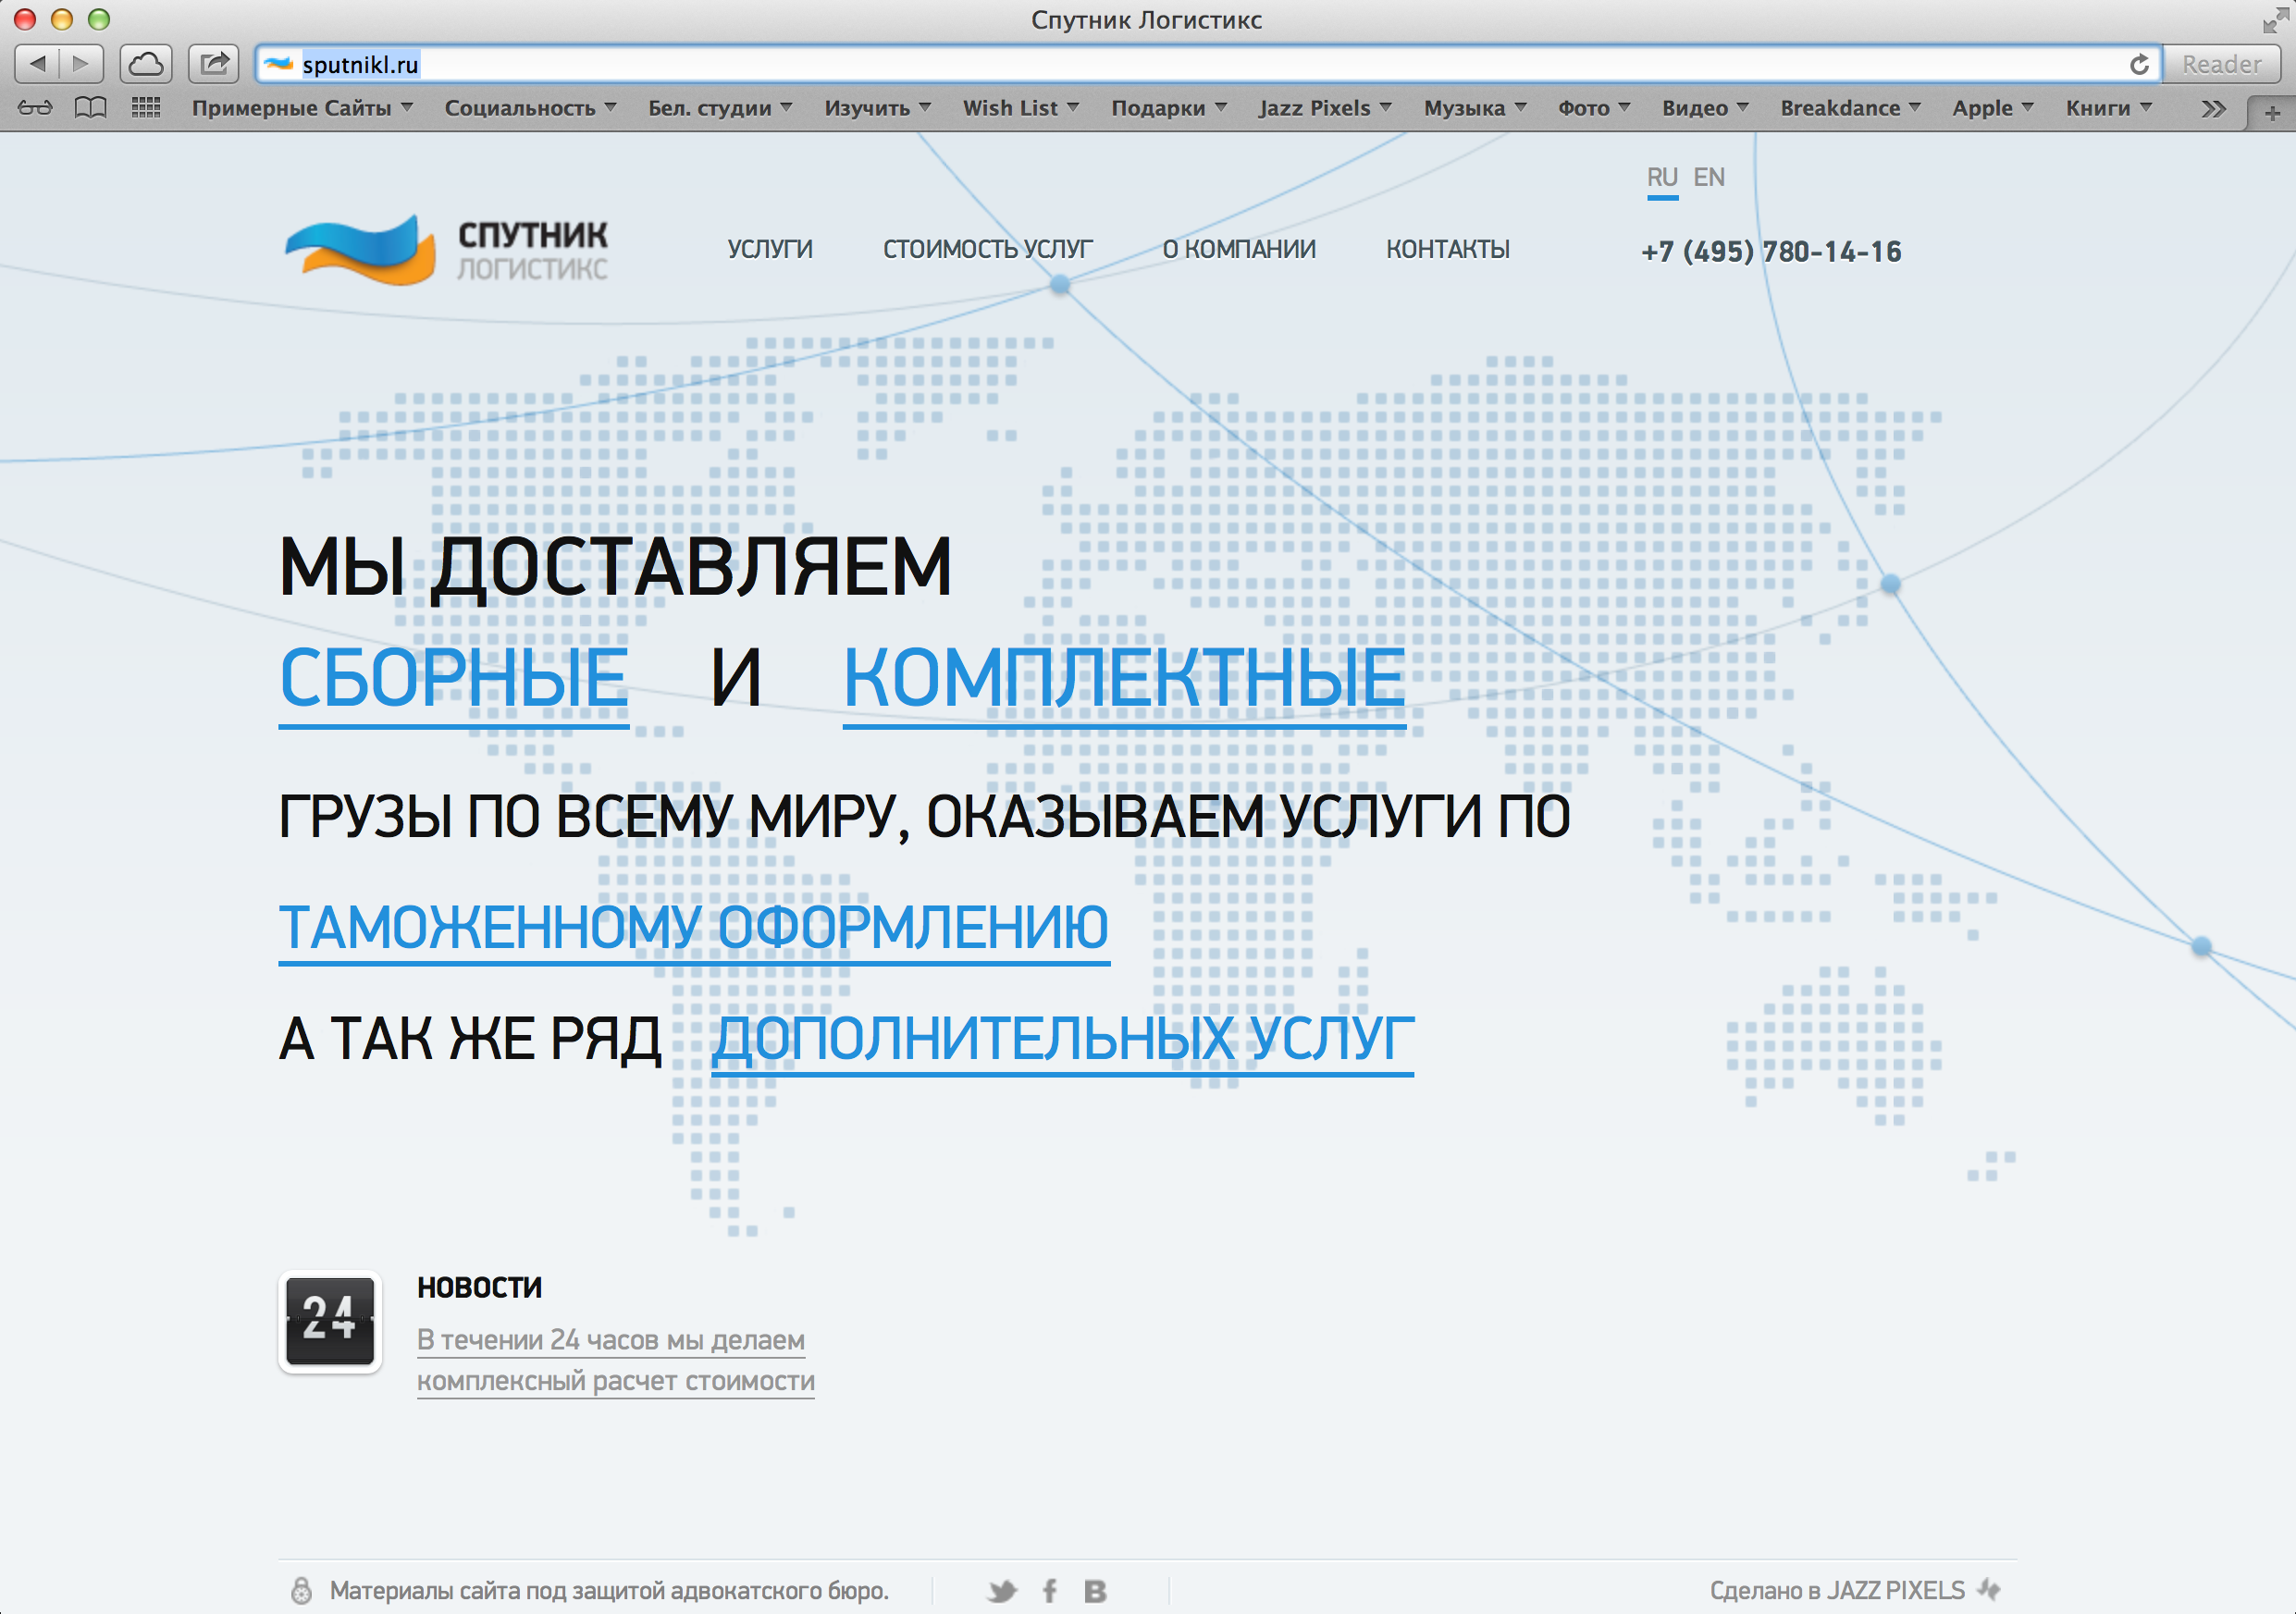 Главная страница сайта компании Спутник Логистикс